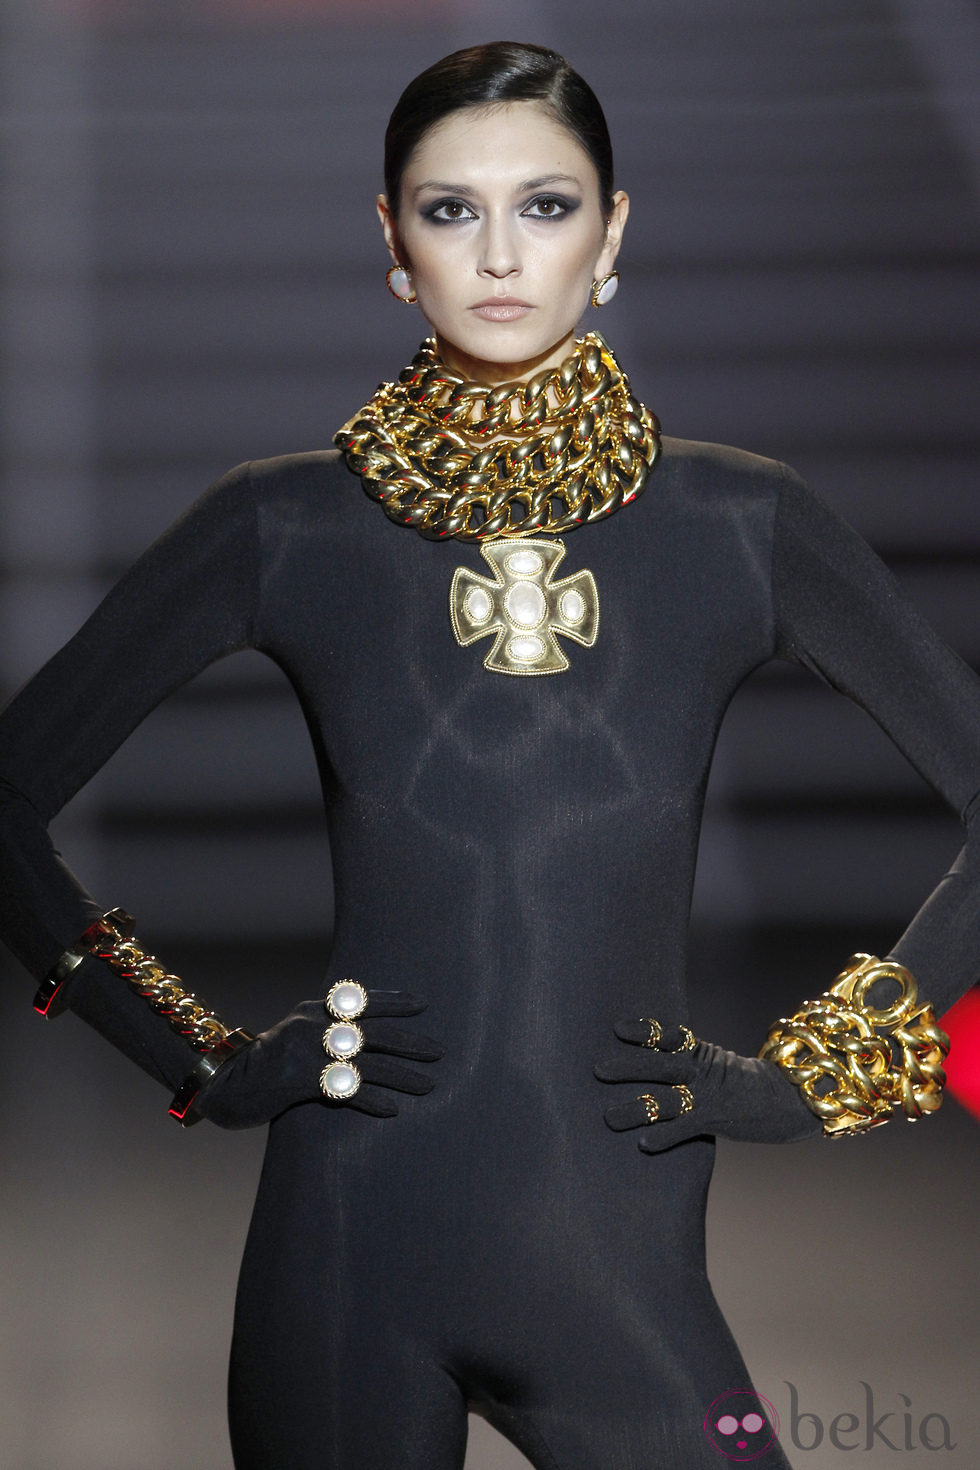 Complementos de maxicadena dorada de Aristocracy en la Fashion Week Madrid